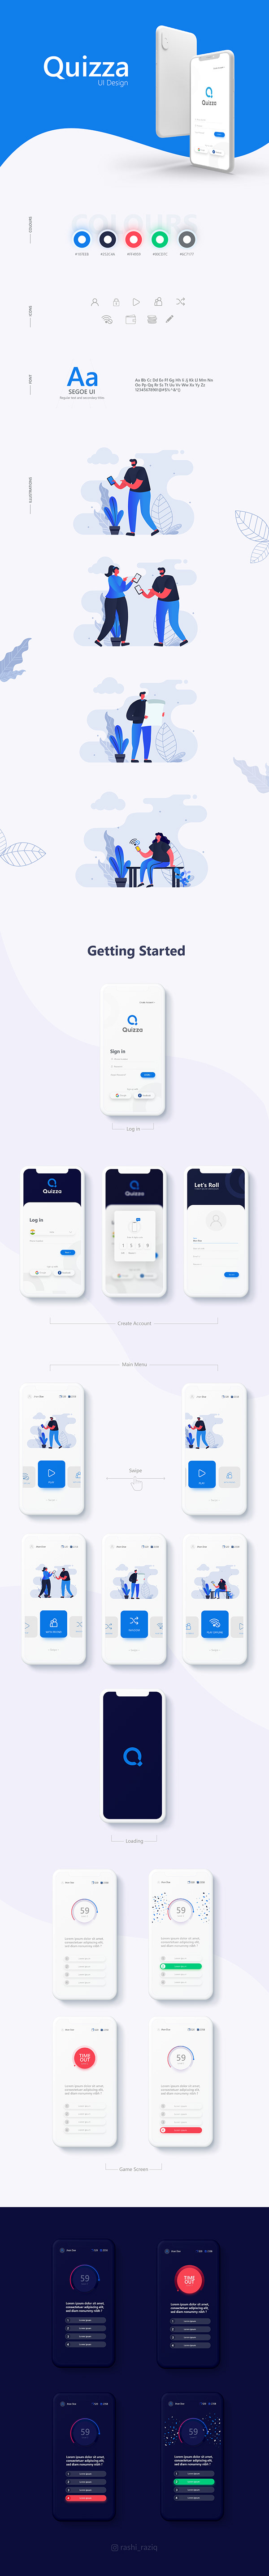 Quizza App (UI Design)